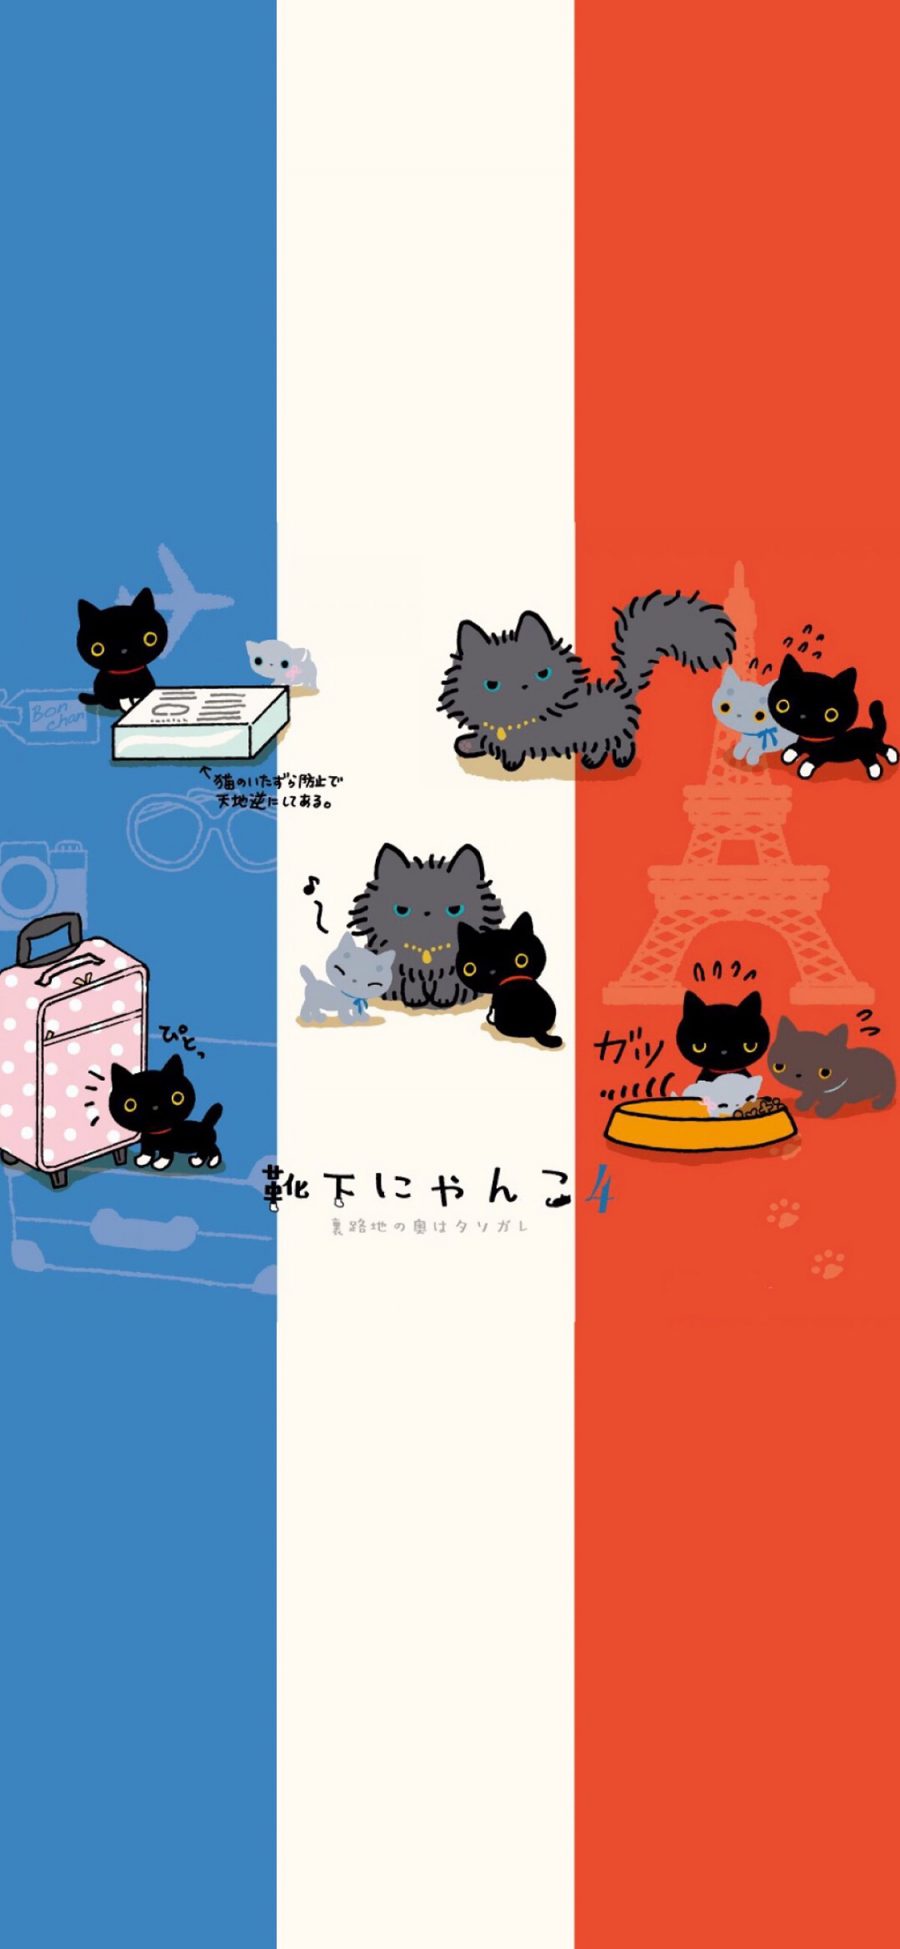 [2436×1125]卡通 猫咪 插画 可爱 苹果手机动漫壁纸图片